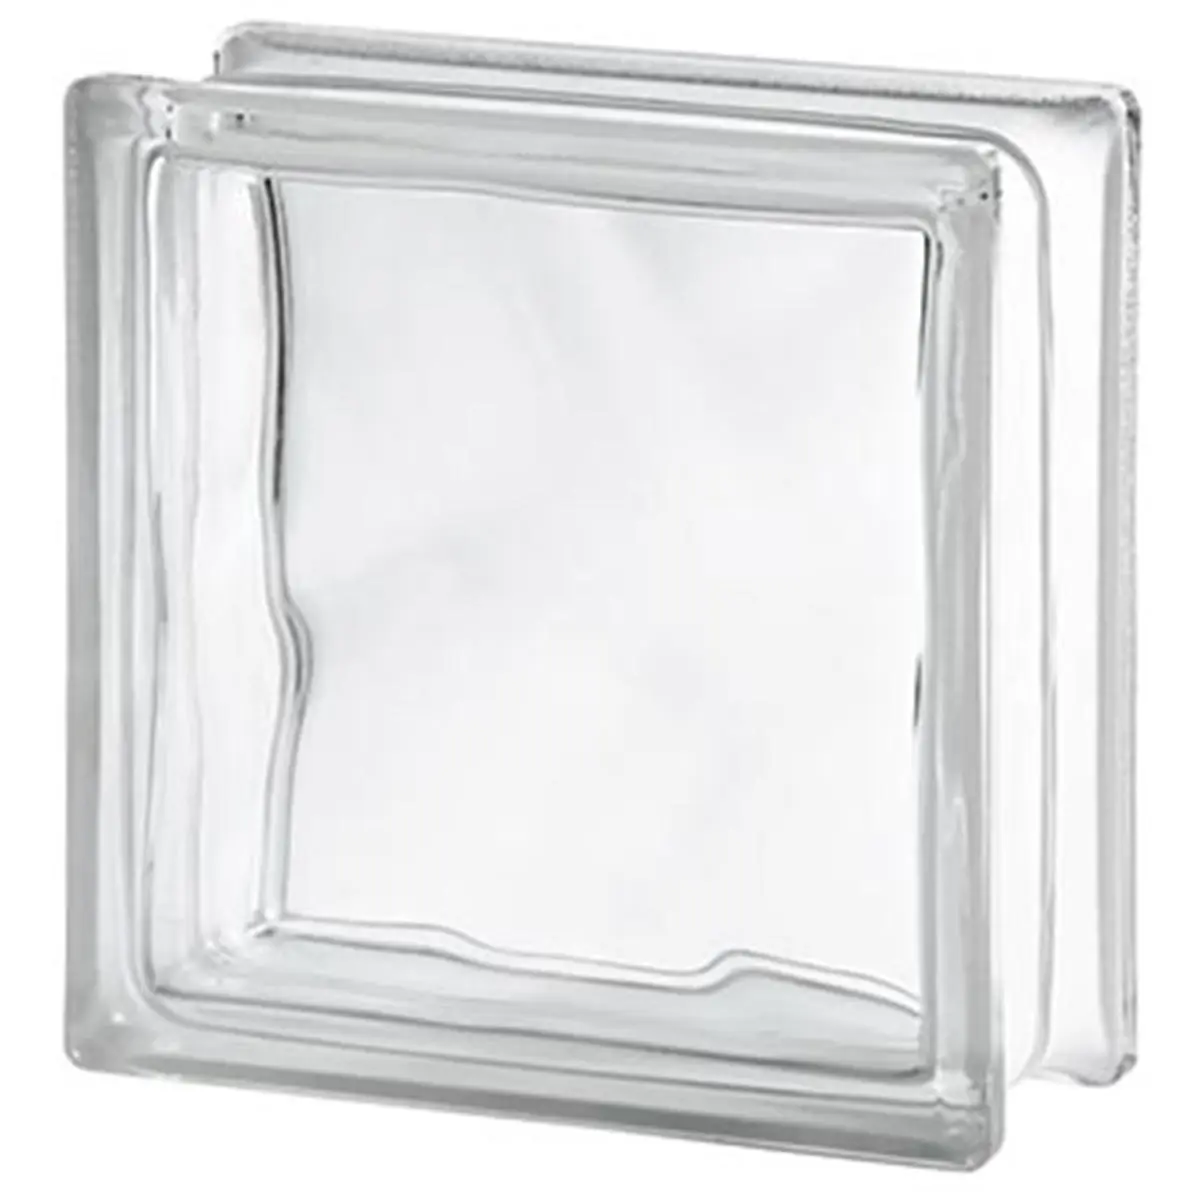 ladrillos de vidrio precio - Cuántos bloques de vidrio entran en un metro cuadrado